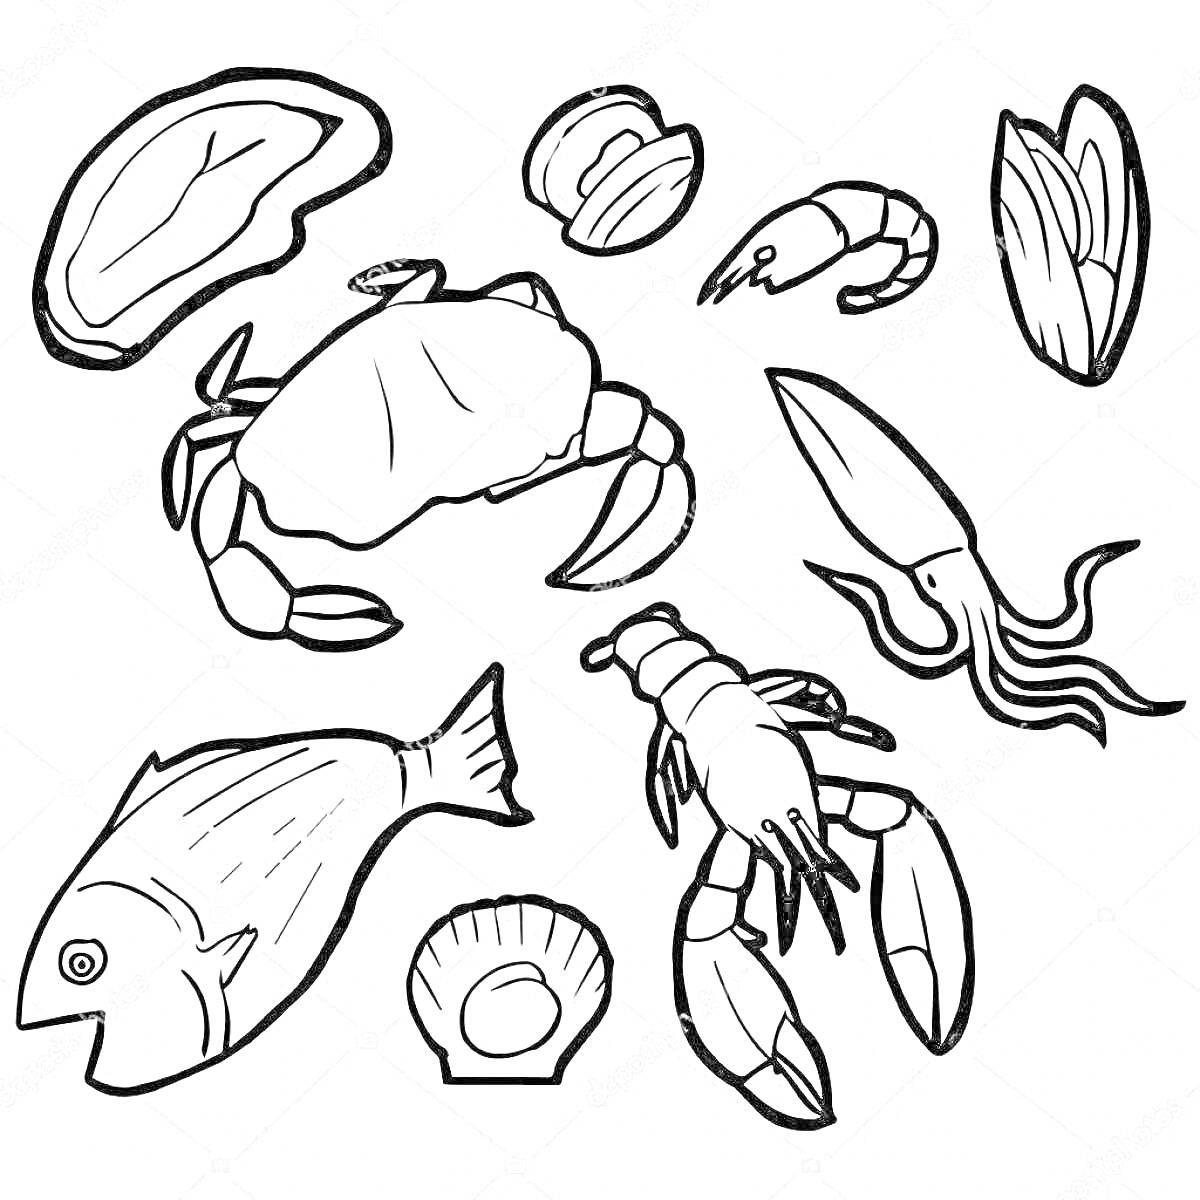 Раскраска Разнообразные морепродукты (краб, устрица, креветка, ракушка, кальмар, рыба, лобстер, мидия)